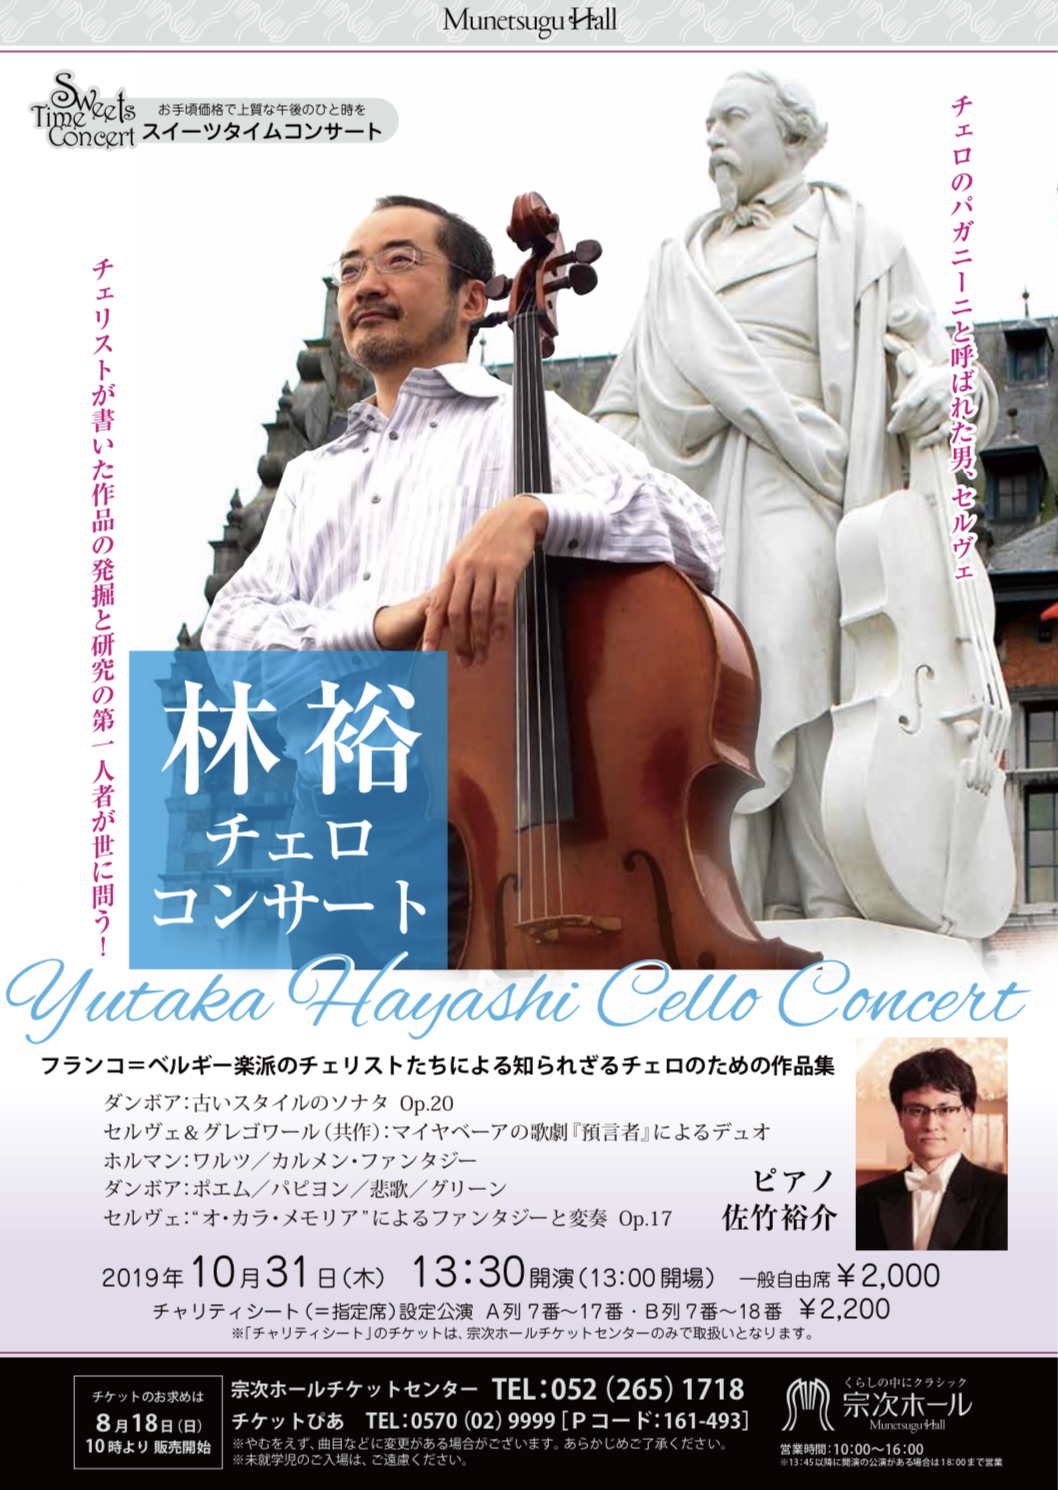 林裕チェロコンサート 一般財団法人 日本チェロ協会 Japan Cello Society